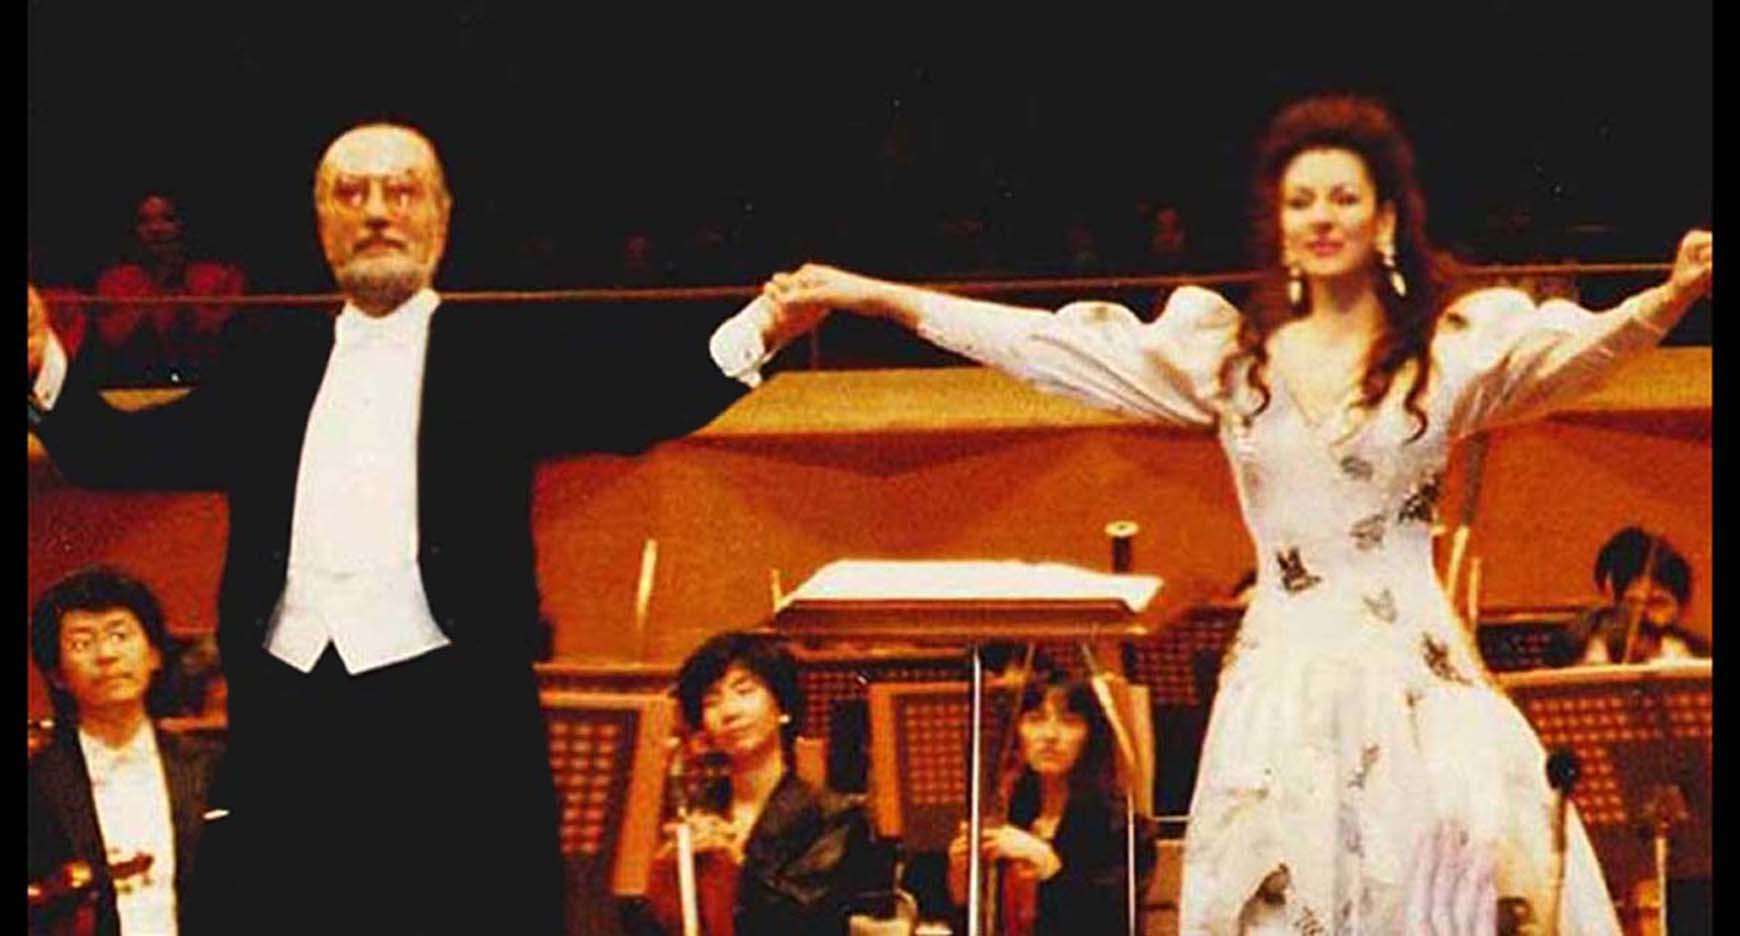 Lucia Aliberti with the baritone Renato Bruson⚘Suntory Hall⚘Tokyo⚘Opera⚘"La Traviata”⚘Live CD and TV Recording⚘Concert⚘On Stage⚘Photo taken from the TV⚘:http://www.luciaaliberti.it #luciaaliberti #peterdvorsky #renatobruson #robertopaternostro #suntoryhall #tokyo #latraviata #opera #livecdrecording #livetvrecording #onstage #hanaemorifashion